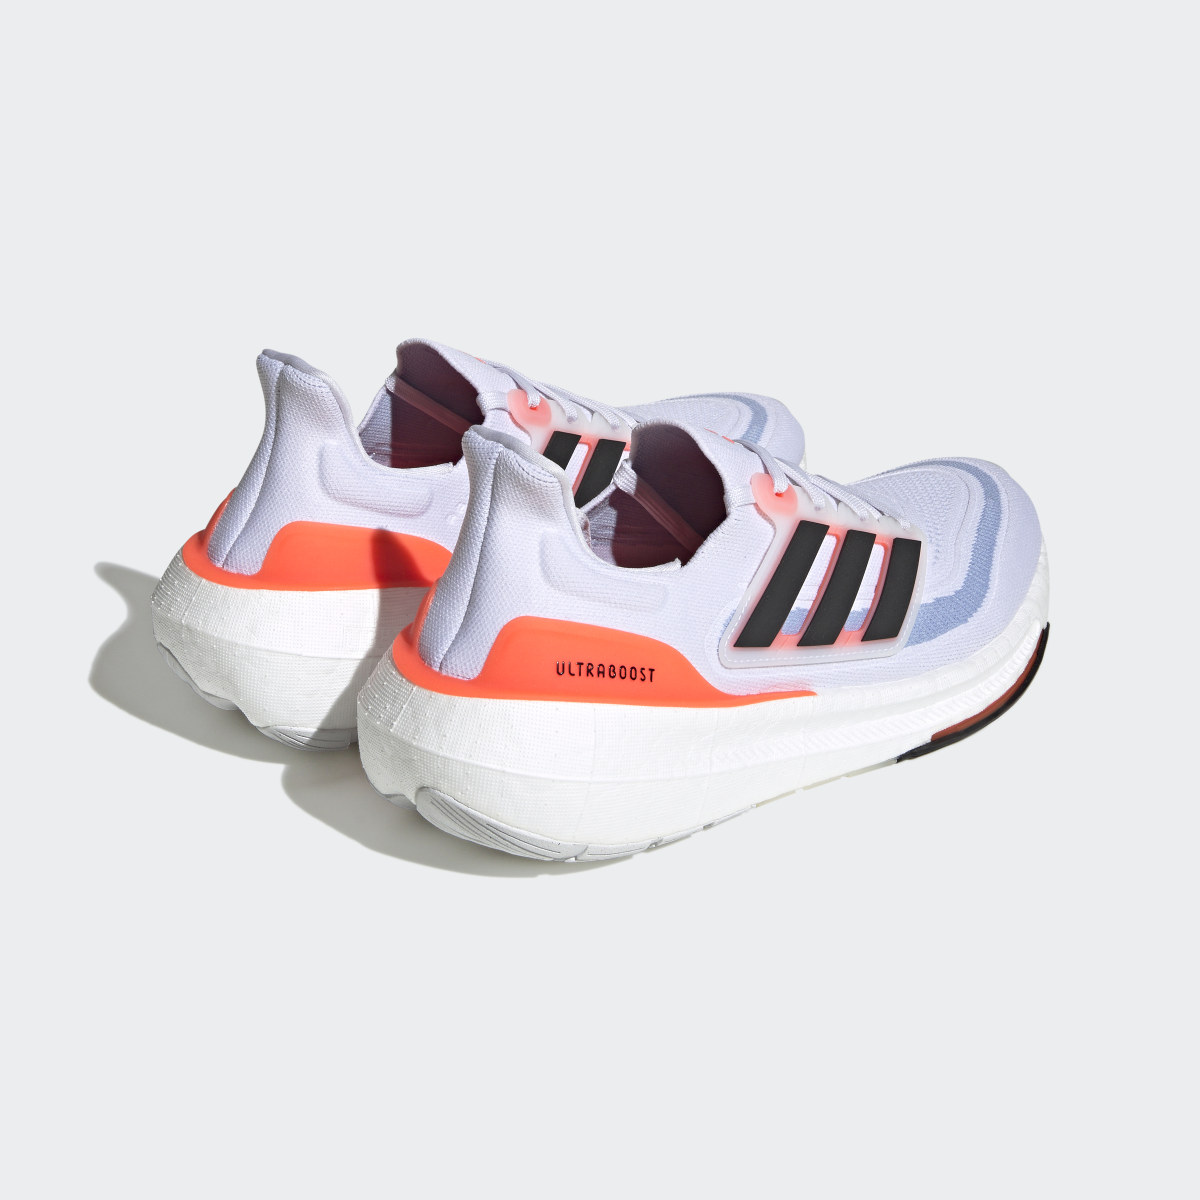 Adidas Ultraboost Light Running Shoes. 8